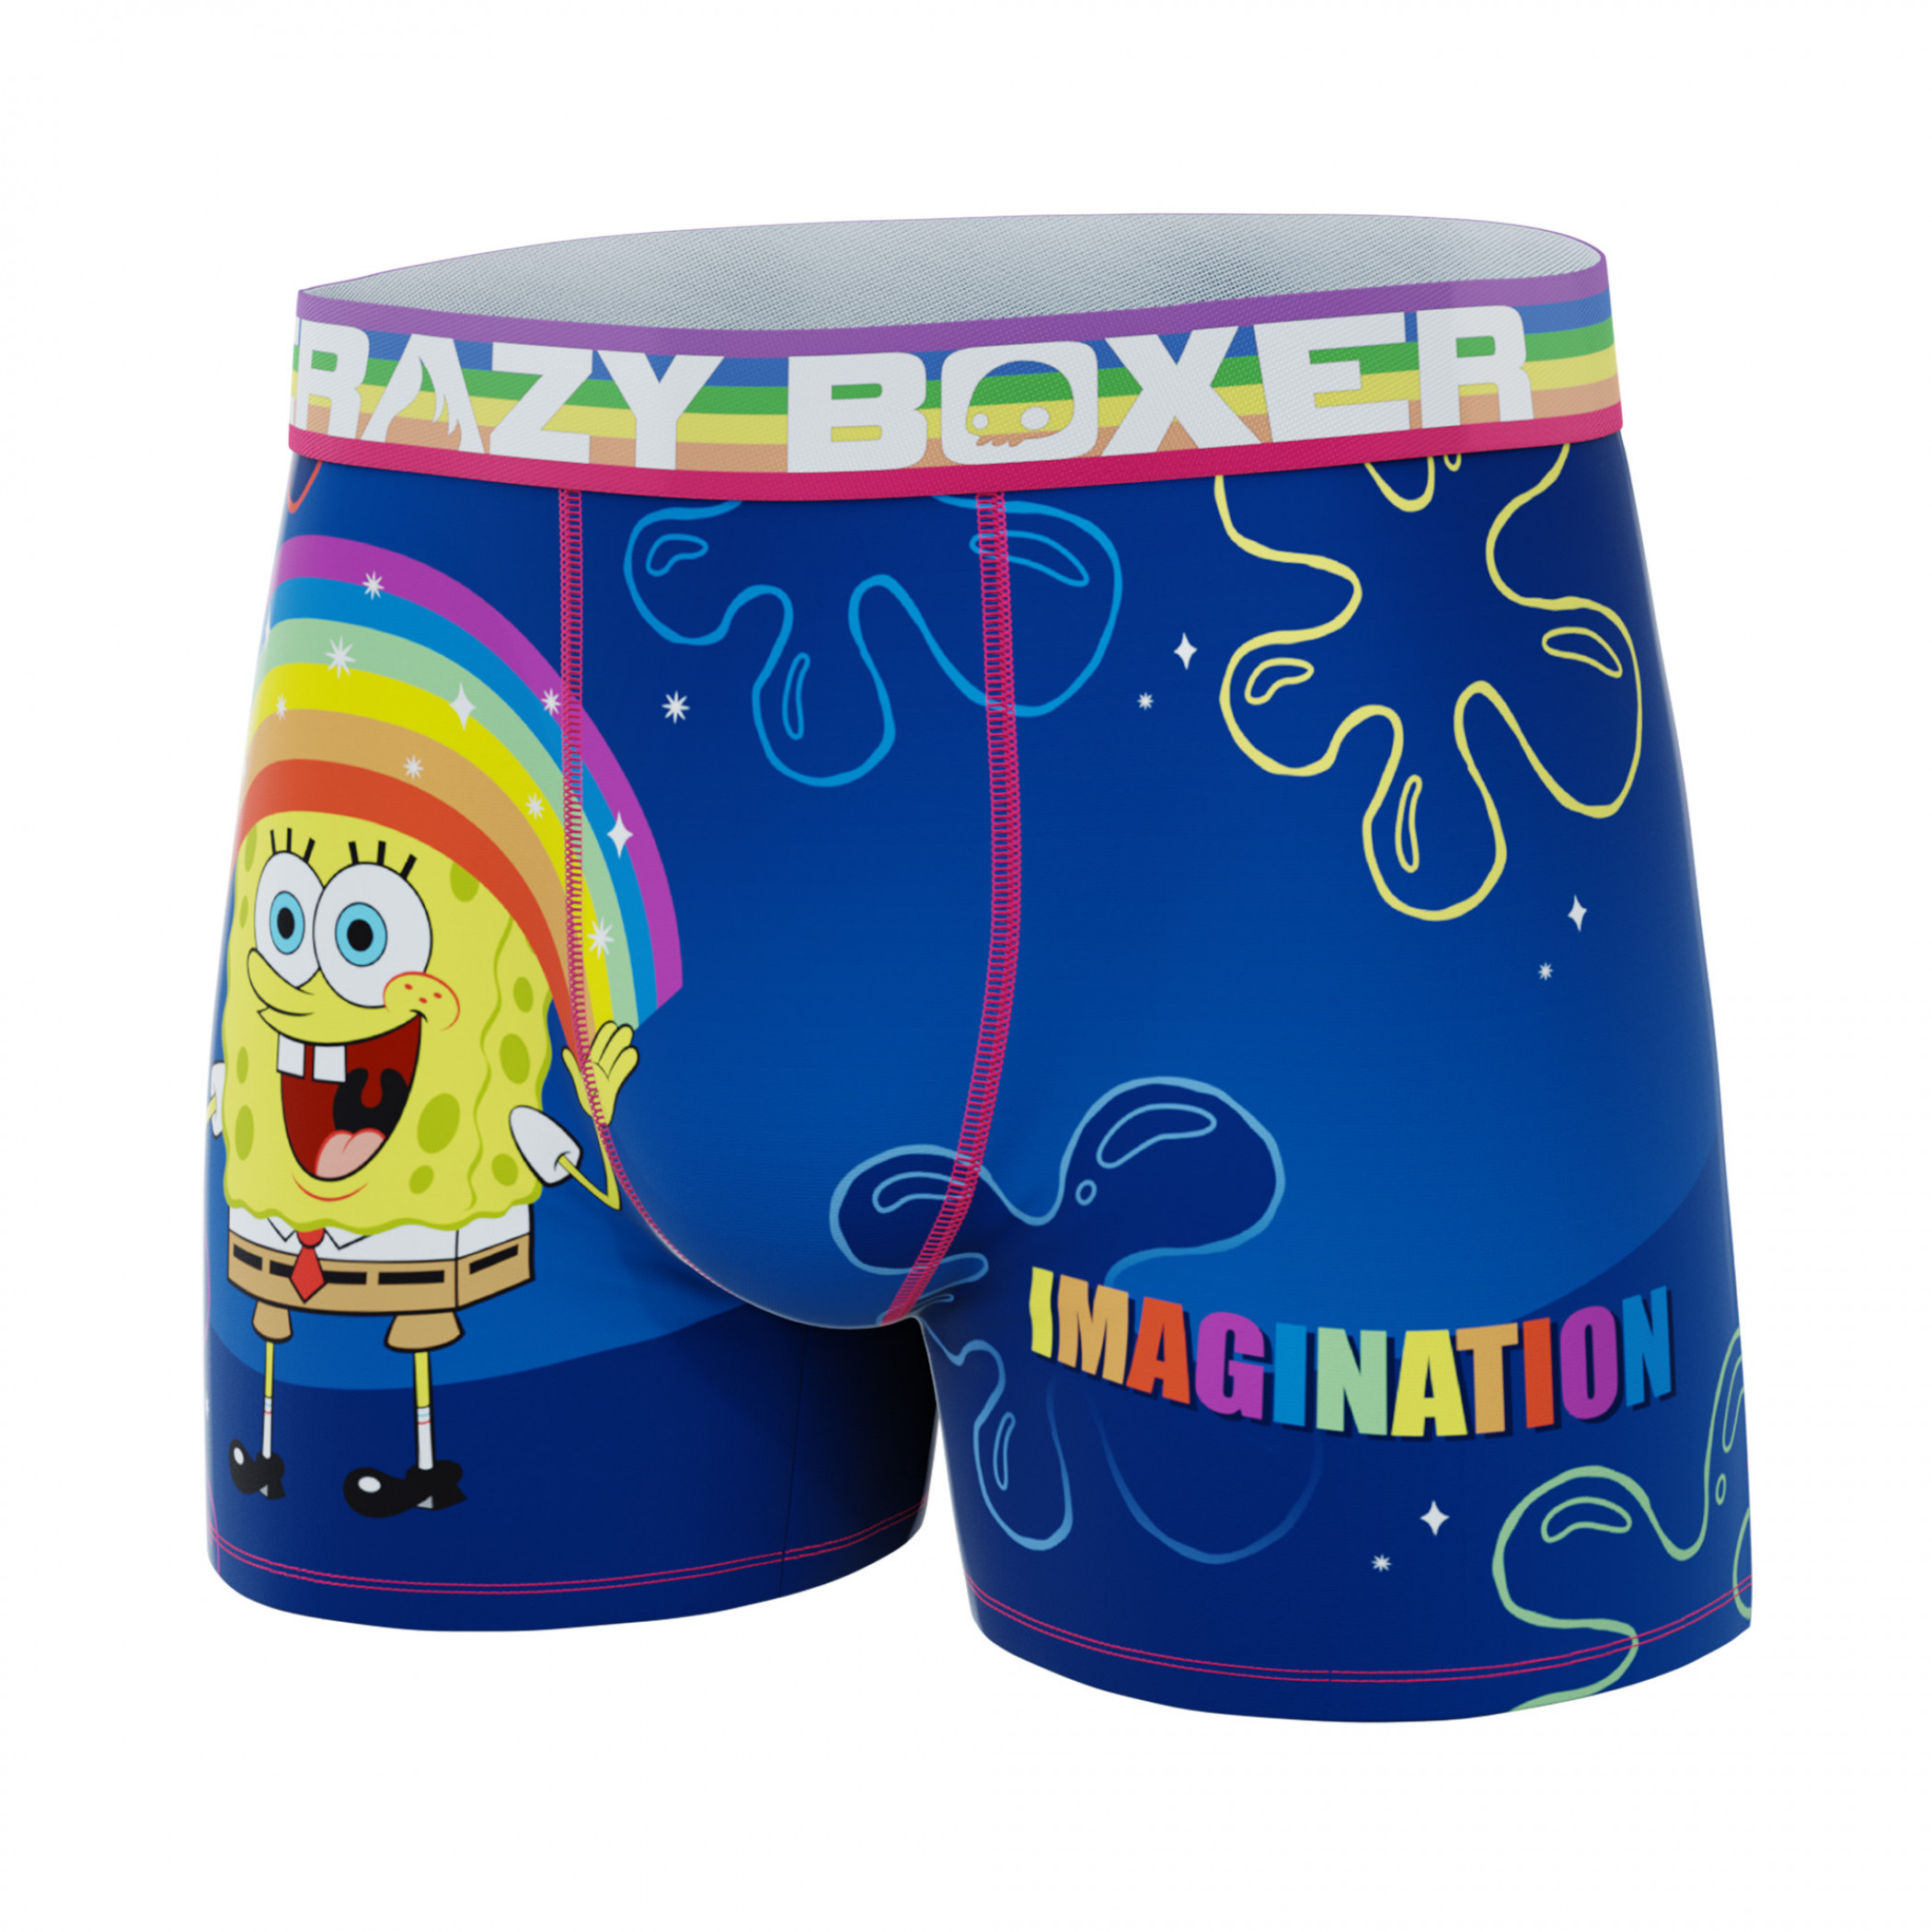 Crazy Boxer SpongeBob SquarePants Imagination Pose with Text Men's Boxer Briefs